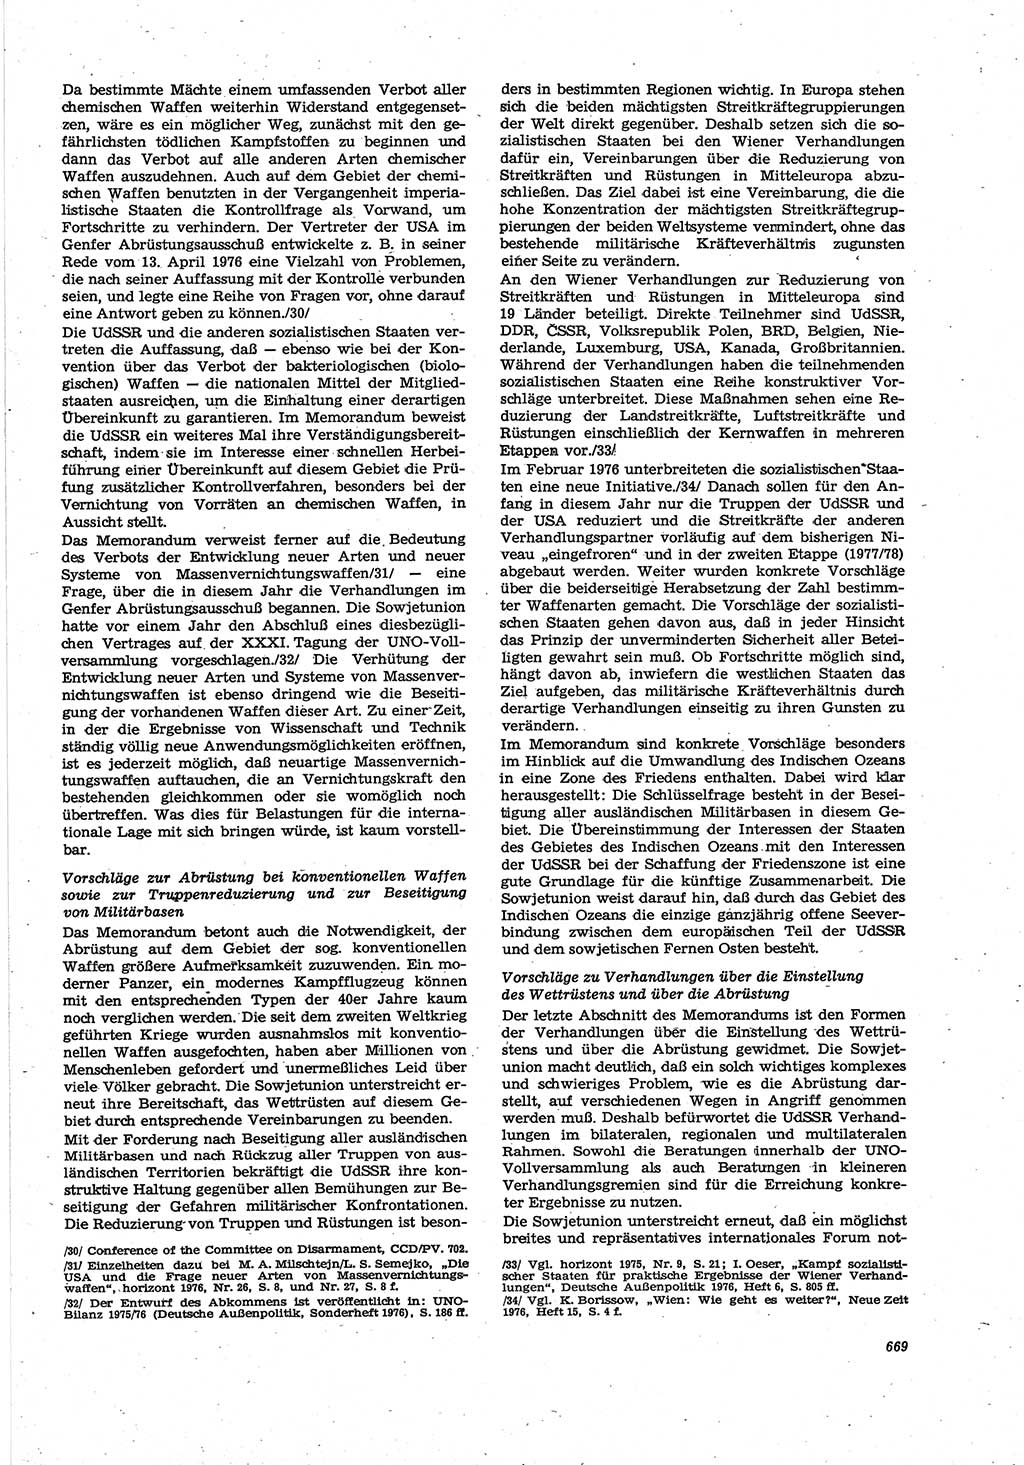 Neue Justiz (NJ), Zeitschrift für Recht und Rechtswissenschaft [Deutsche Demokratische Republik (DDR)], 30. Jahrgang 1976, Seite 669 (NJ DDR 1976, S. 669)